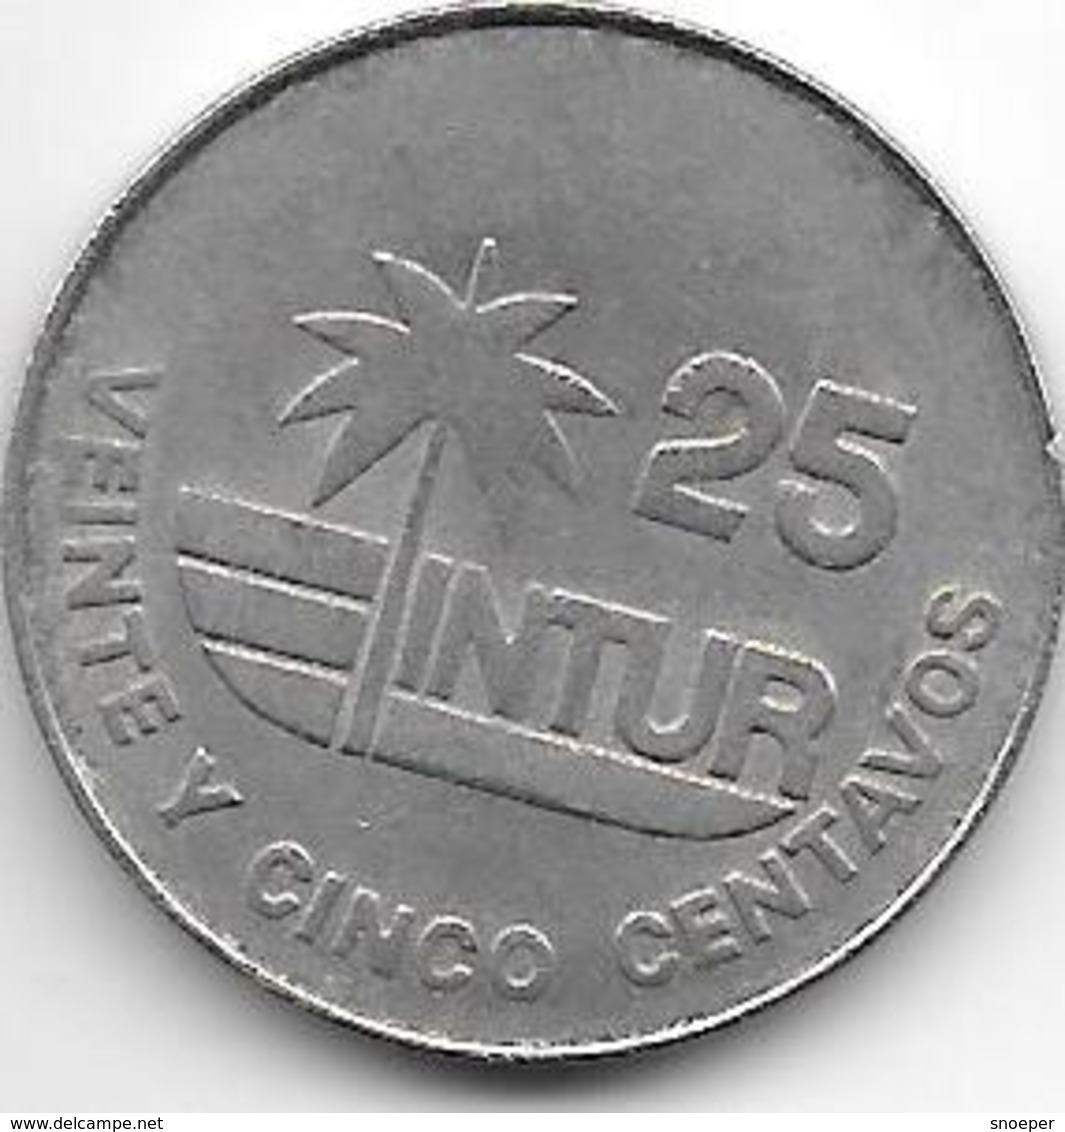 Cuba 25 Centavos 1981 Km 418.1 Xf - Cuba